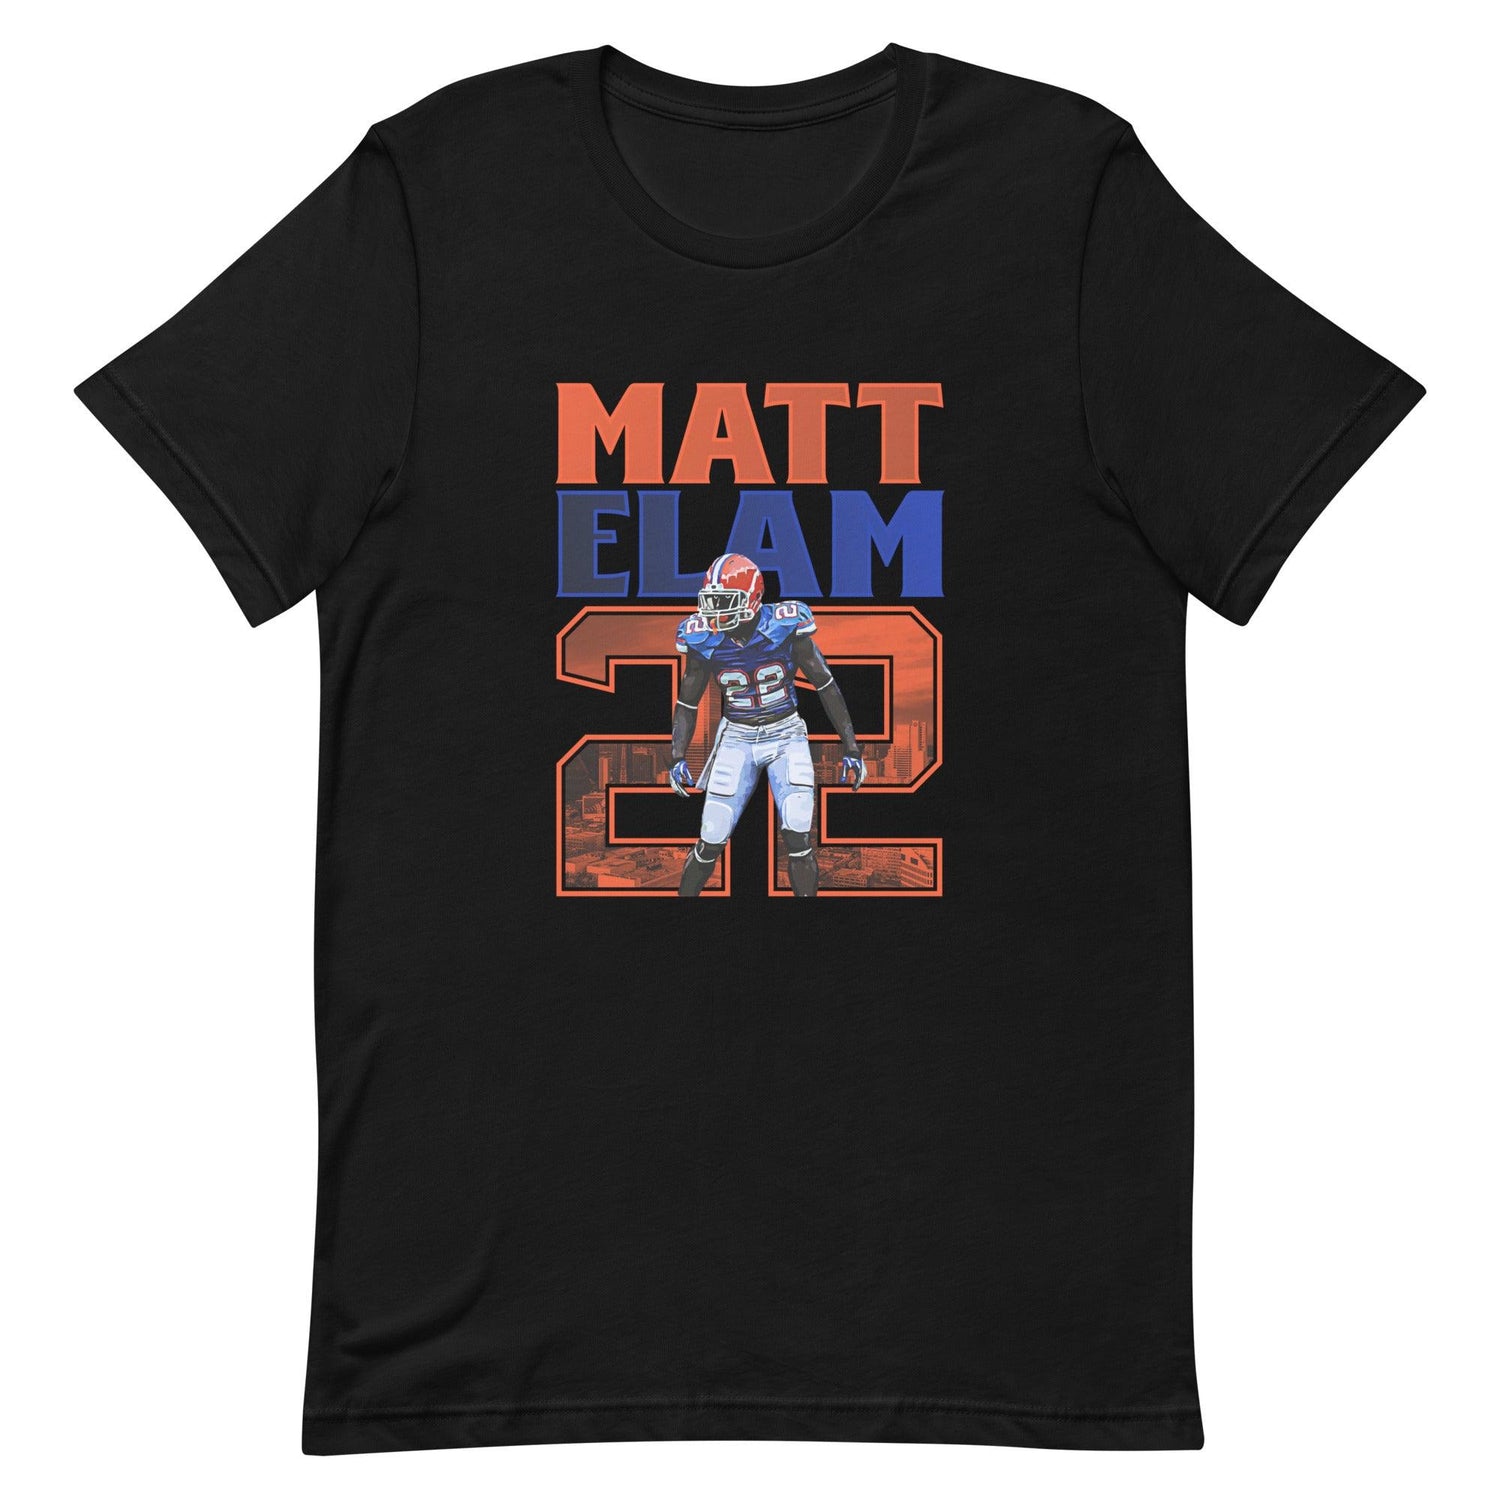 Matt Elam "Gameday" t-shirt - Fan Arch